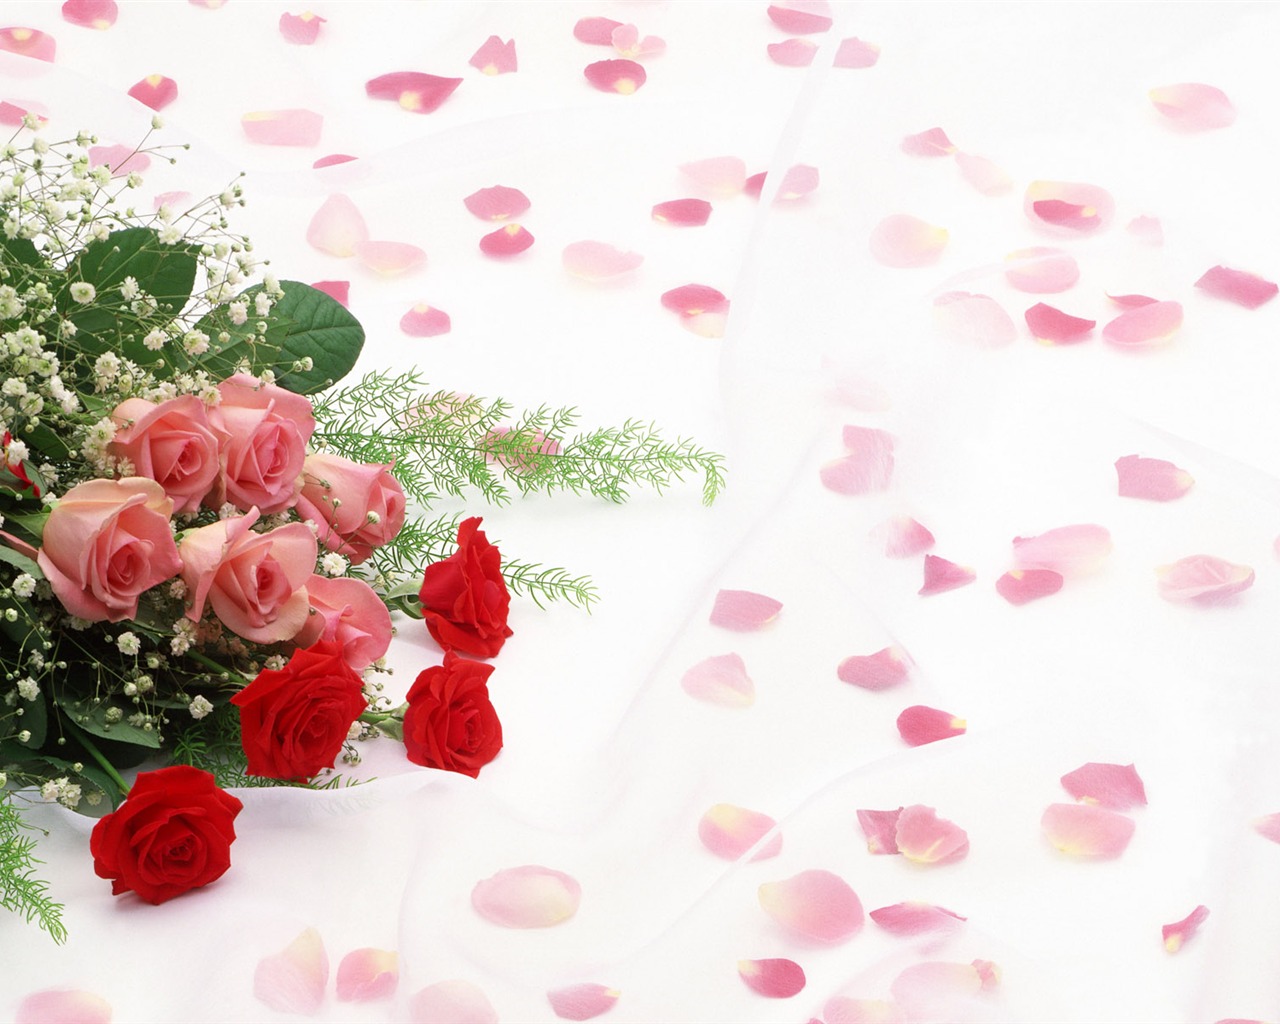 婚庆鲜花物品壁纸(一)6 - 1280x1024